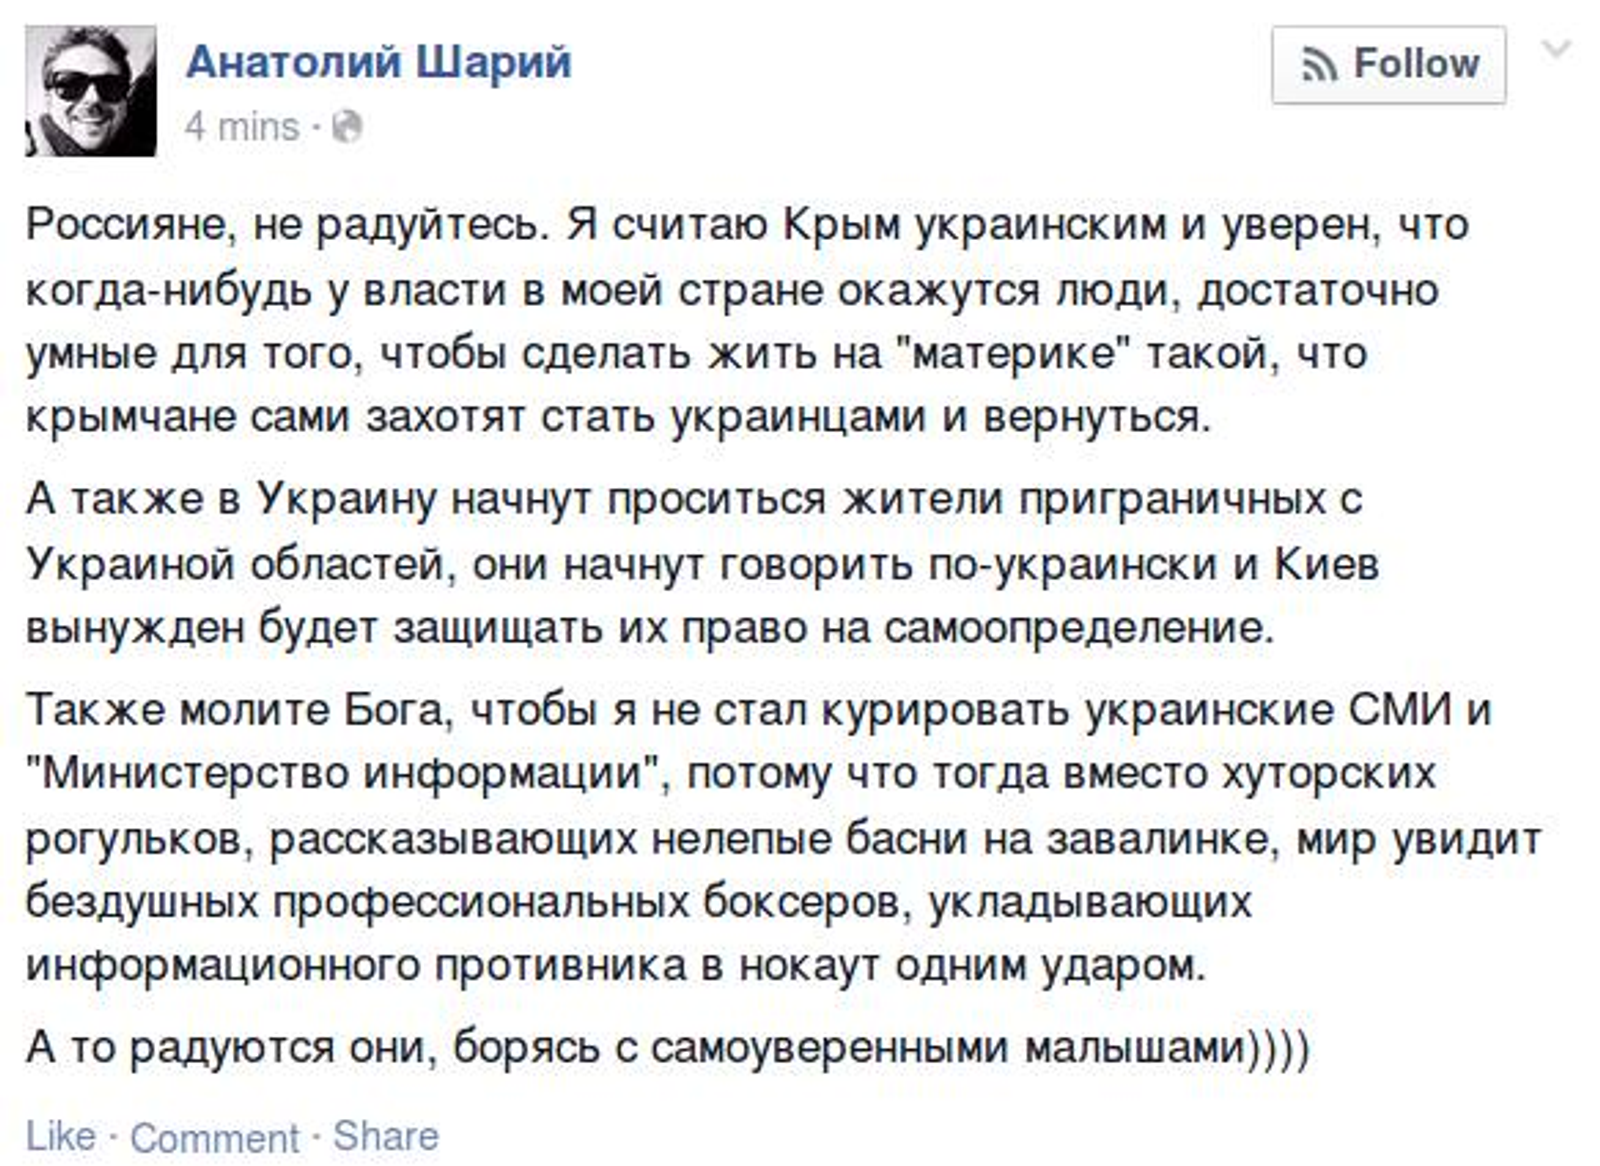 Украинцы радовались. Шарий пидорашка. Украинцы радуются. Украинский журналист Шарий. Шарий россияне не радуйтесь.